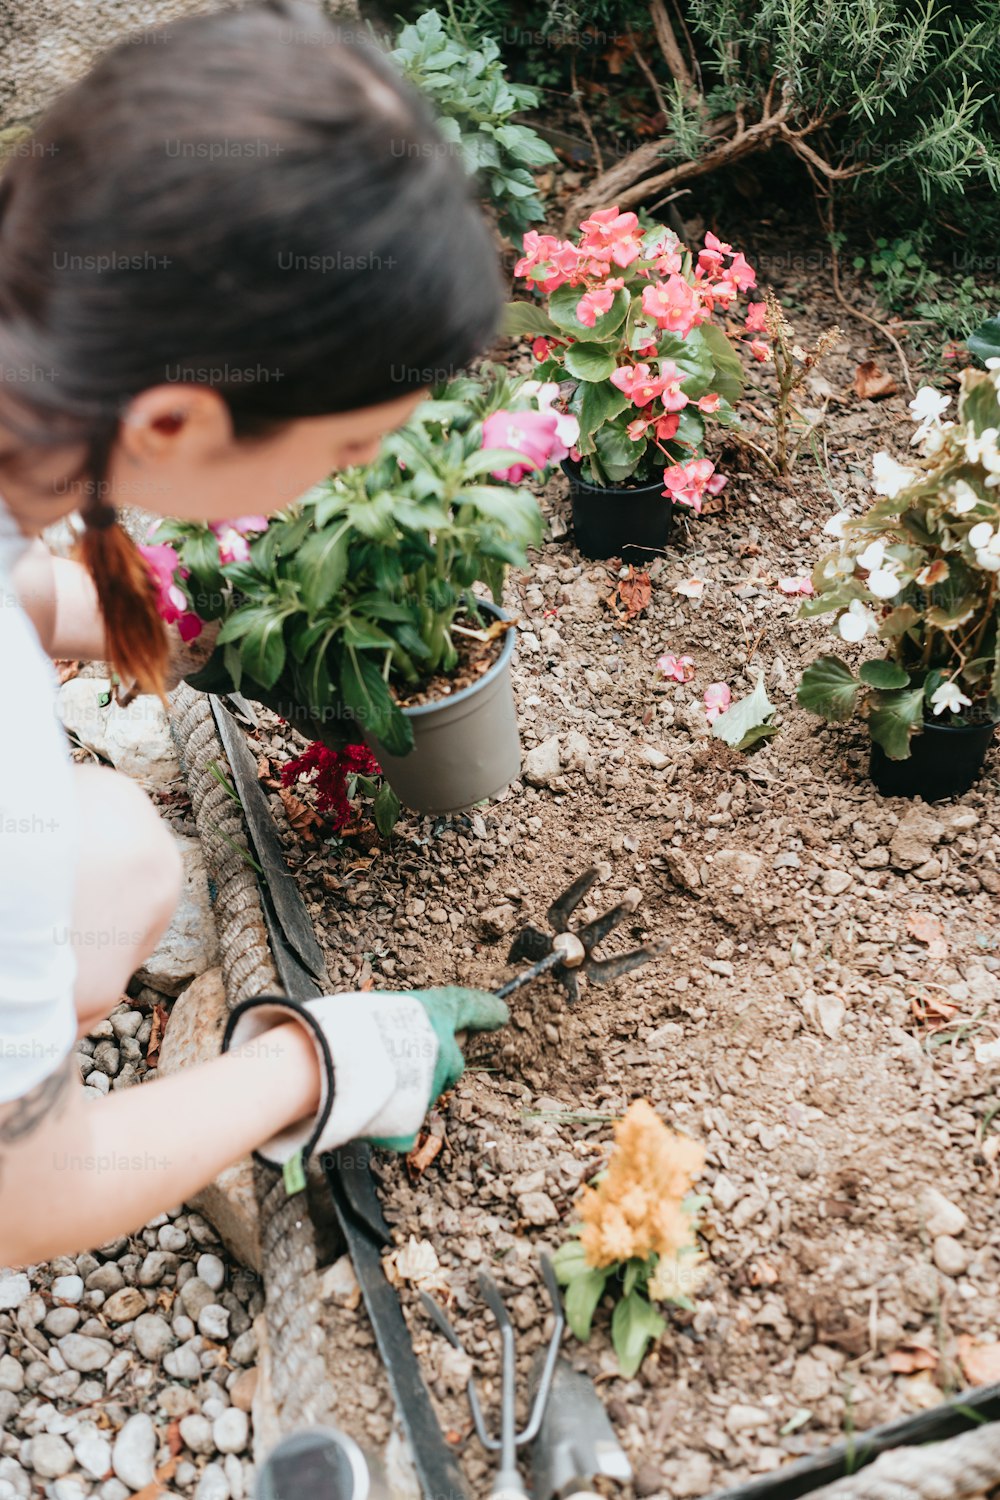 Una mujer trabajando en un jardín con flores